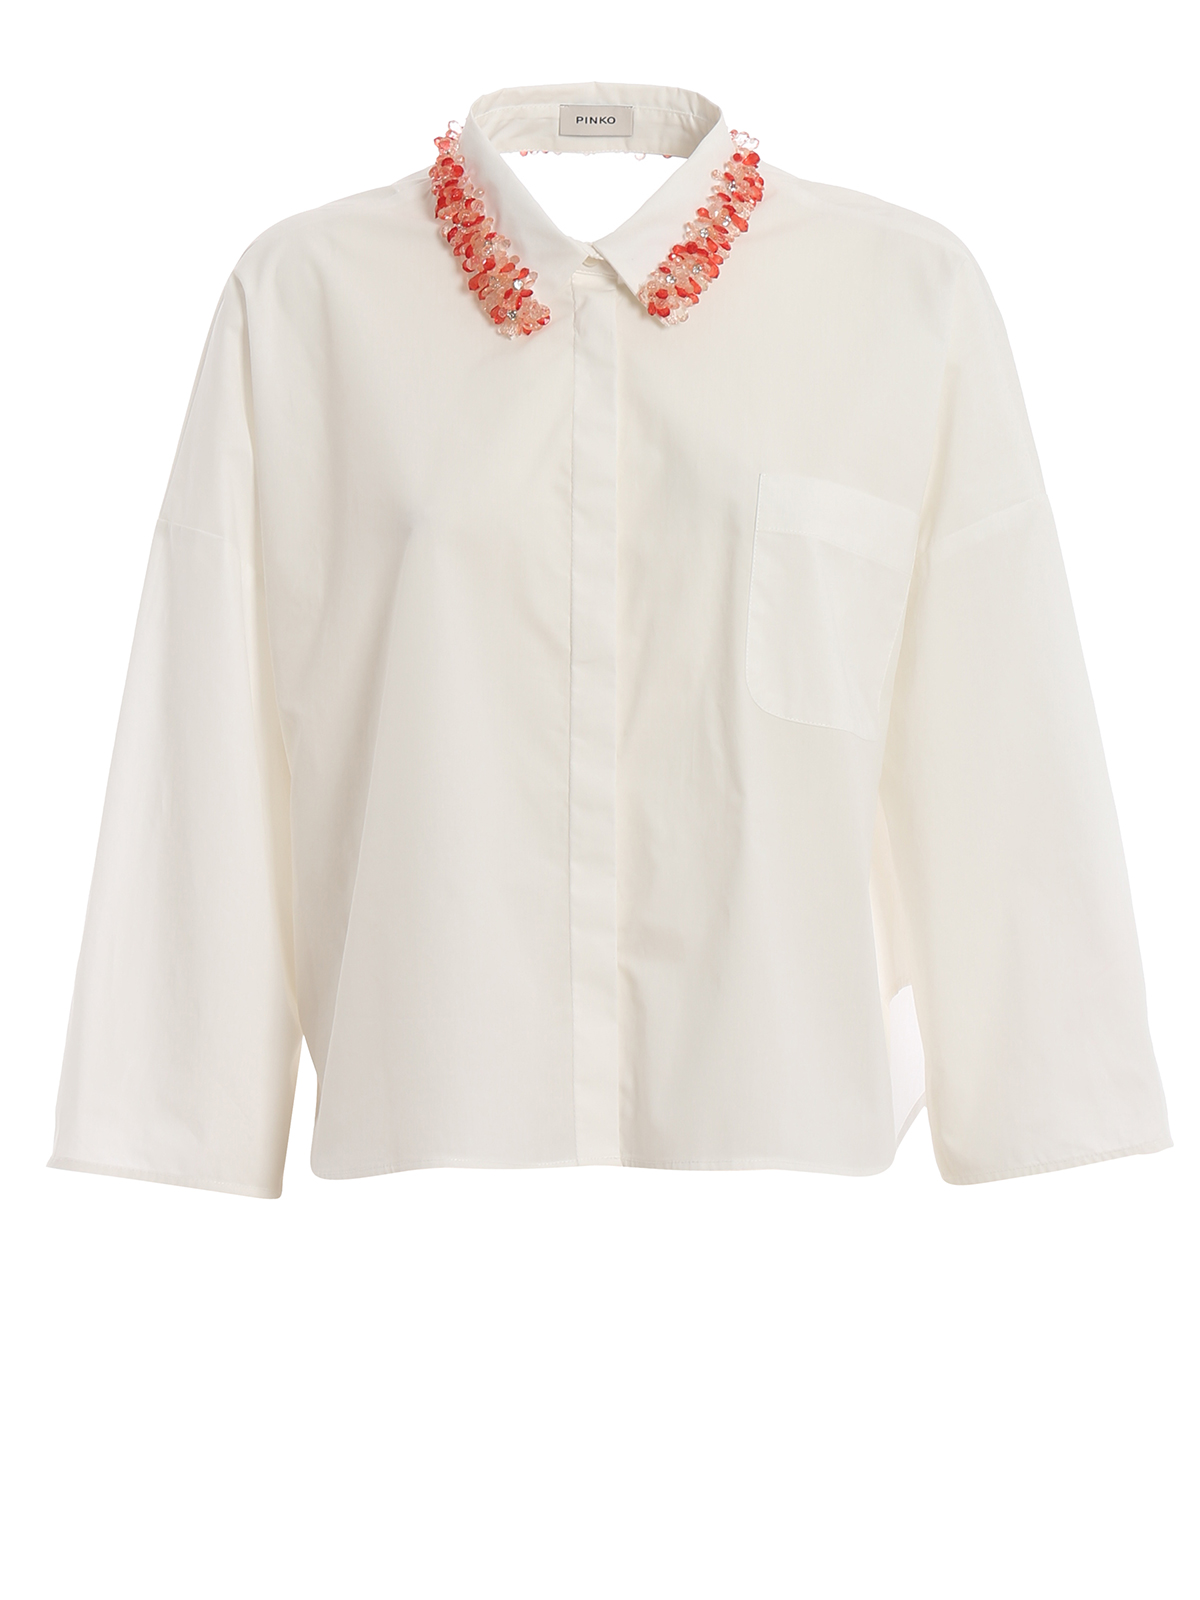 Pinko Reggente 1 Embellished Poplin Over Shirt In White